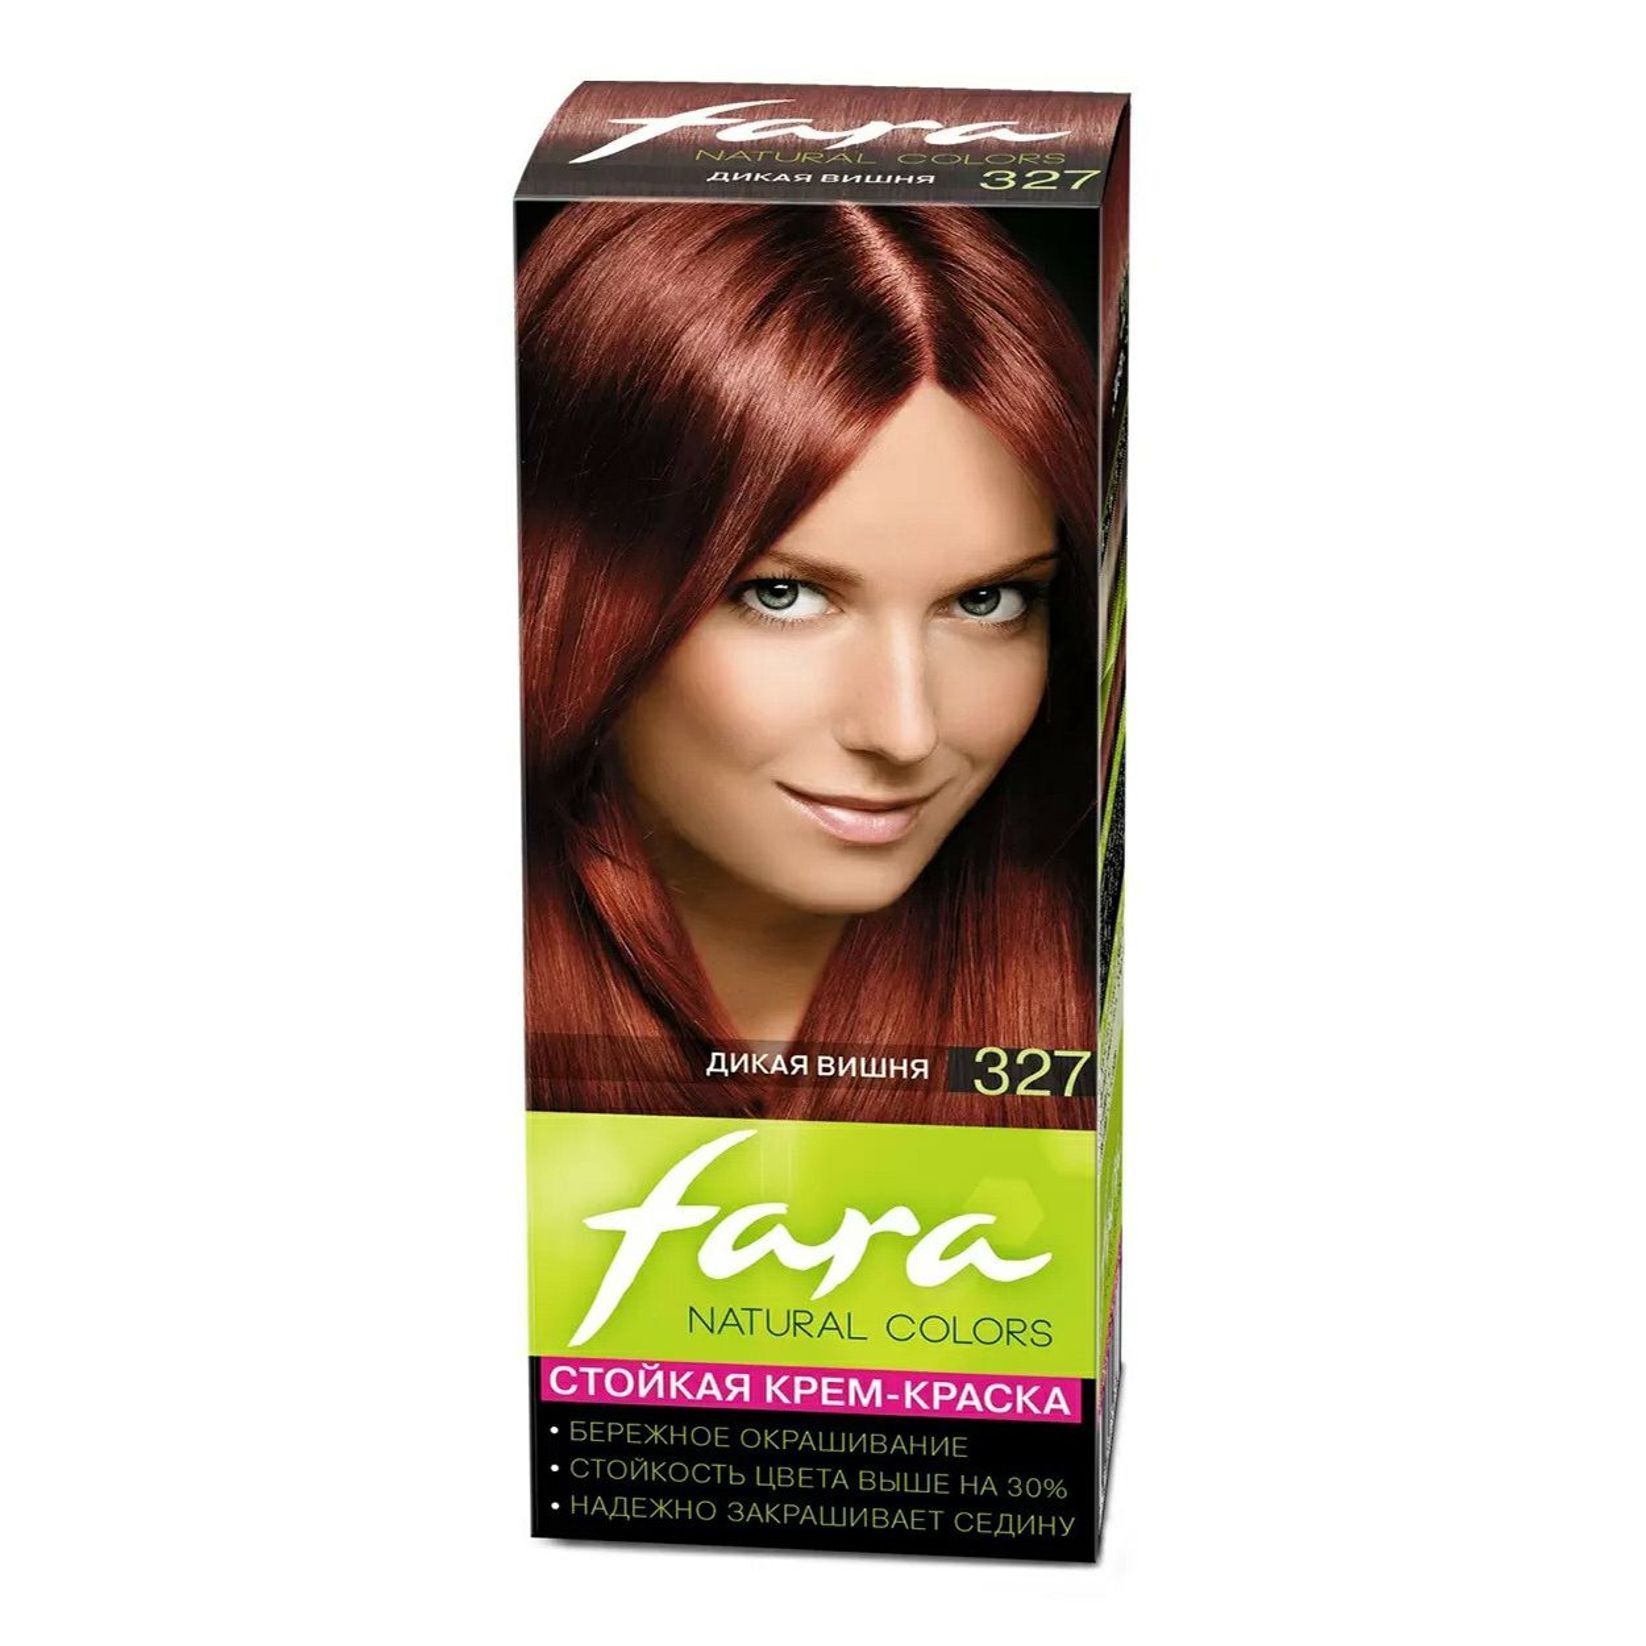 Дикая вишня интернет. Fara natural Colors краска для волос. Краска для волос фара Дикая вишня. 327 Тон Дикая вишня. Дикая вишня краска для волос.